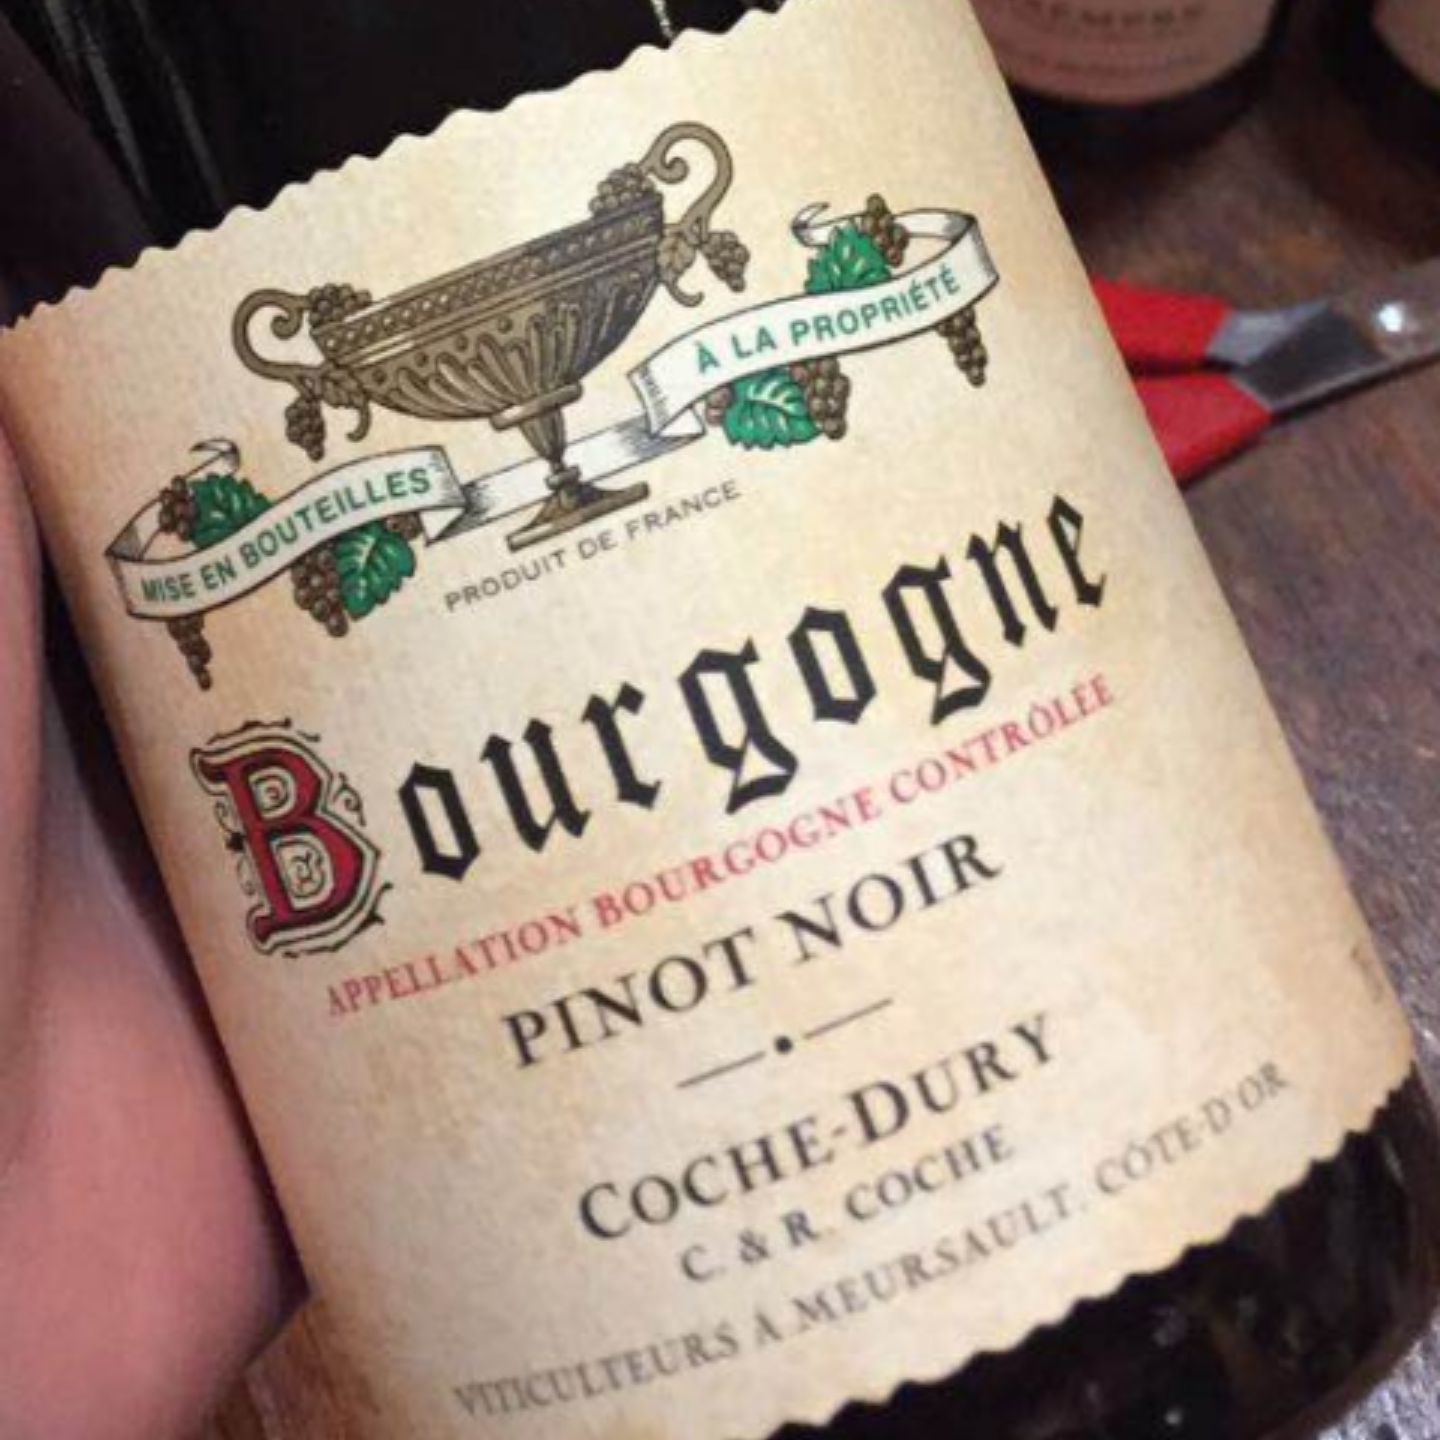 科奇勃艮第干白J.-F Coche-Dury Bourgogne Blanc